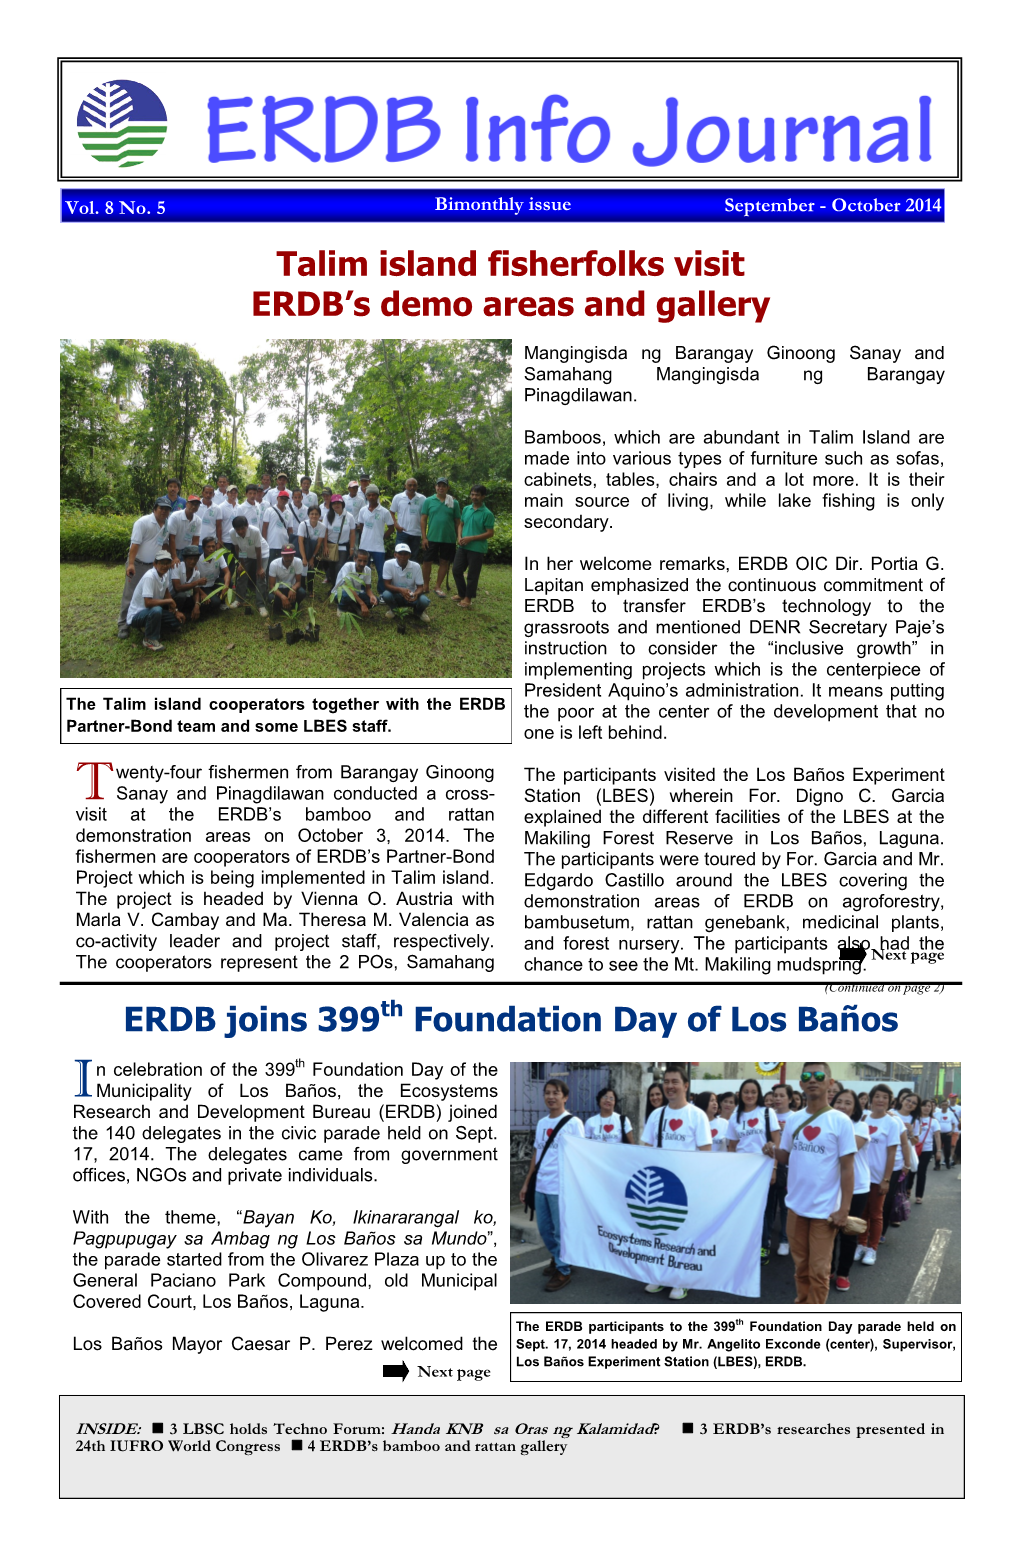 Talim Island Fisherfolks Visit ERDB's Demo Areas and Gallery ERDB Joins